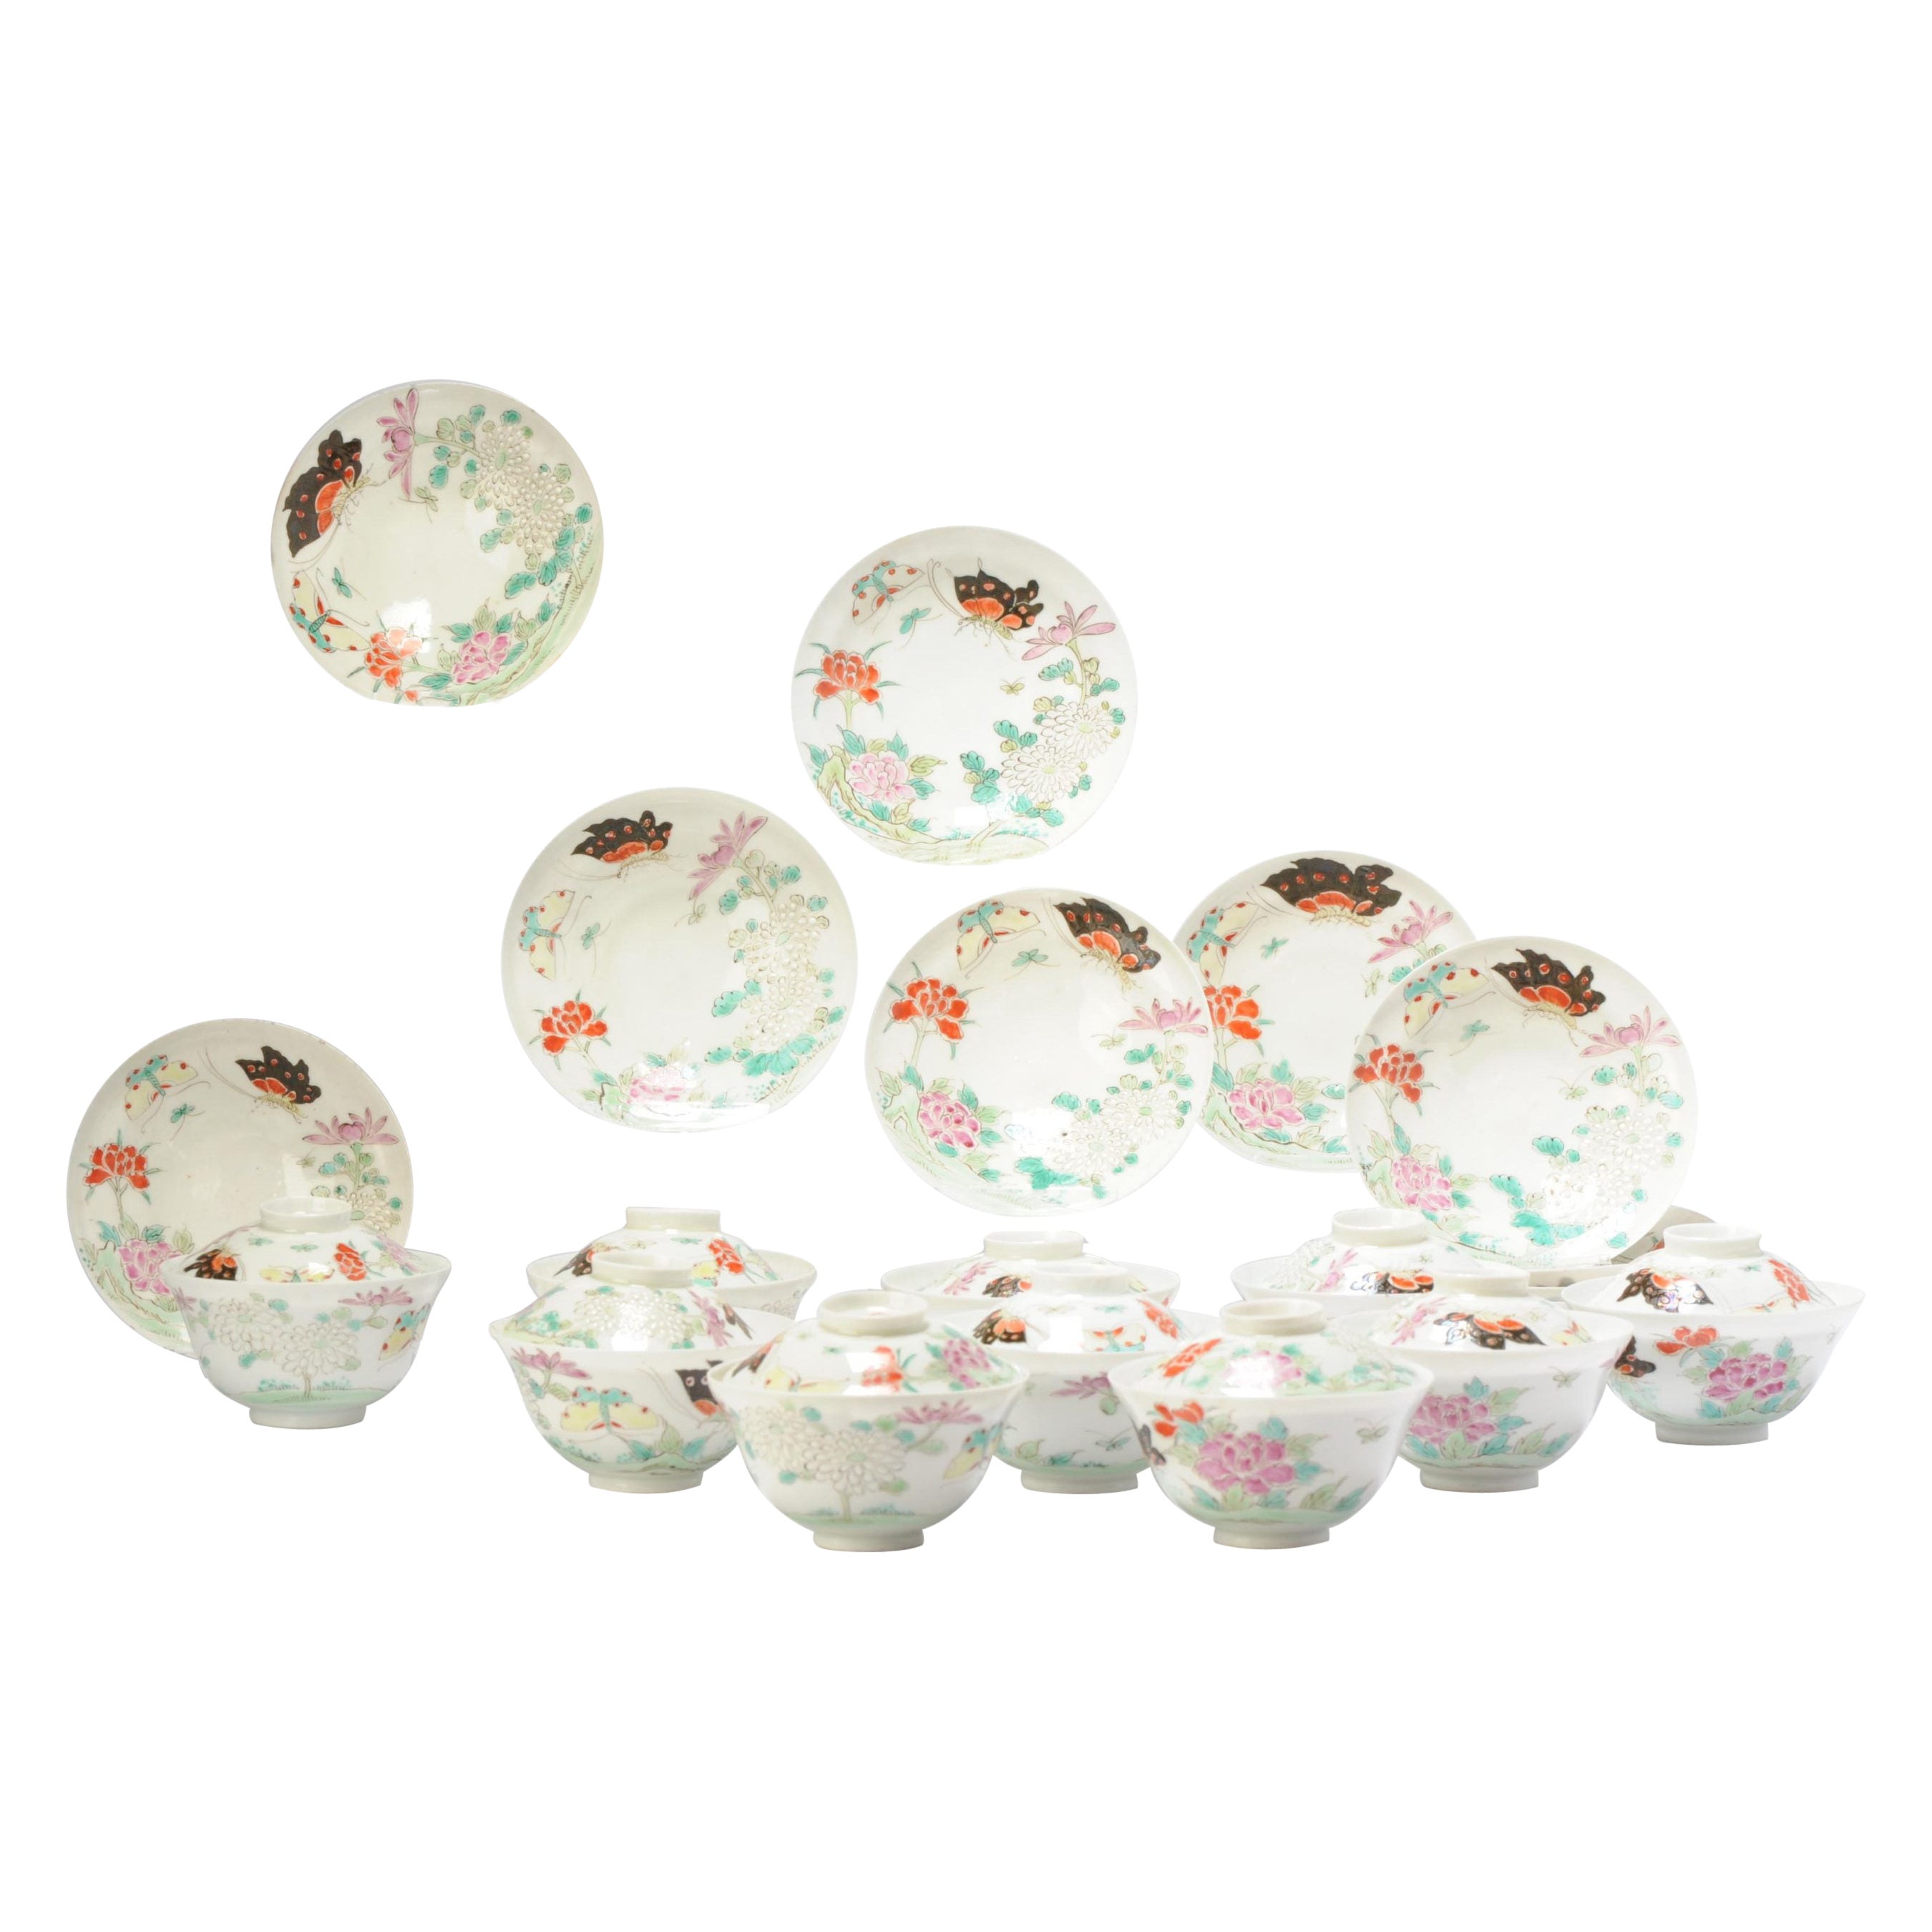 Ensemble de 10 bols à thé Chawan en porcelaine coquille d'œuf de la période Meiji